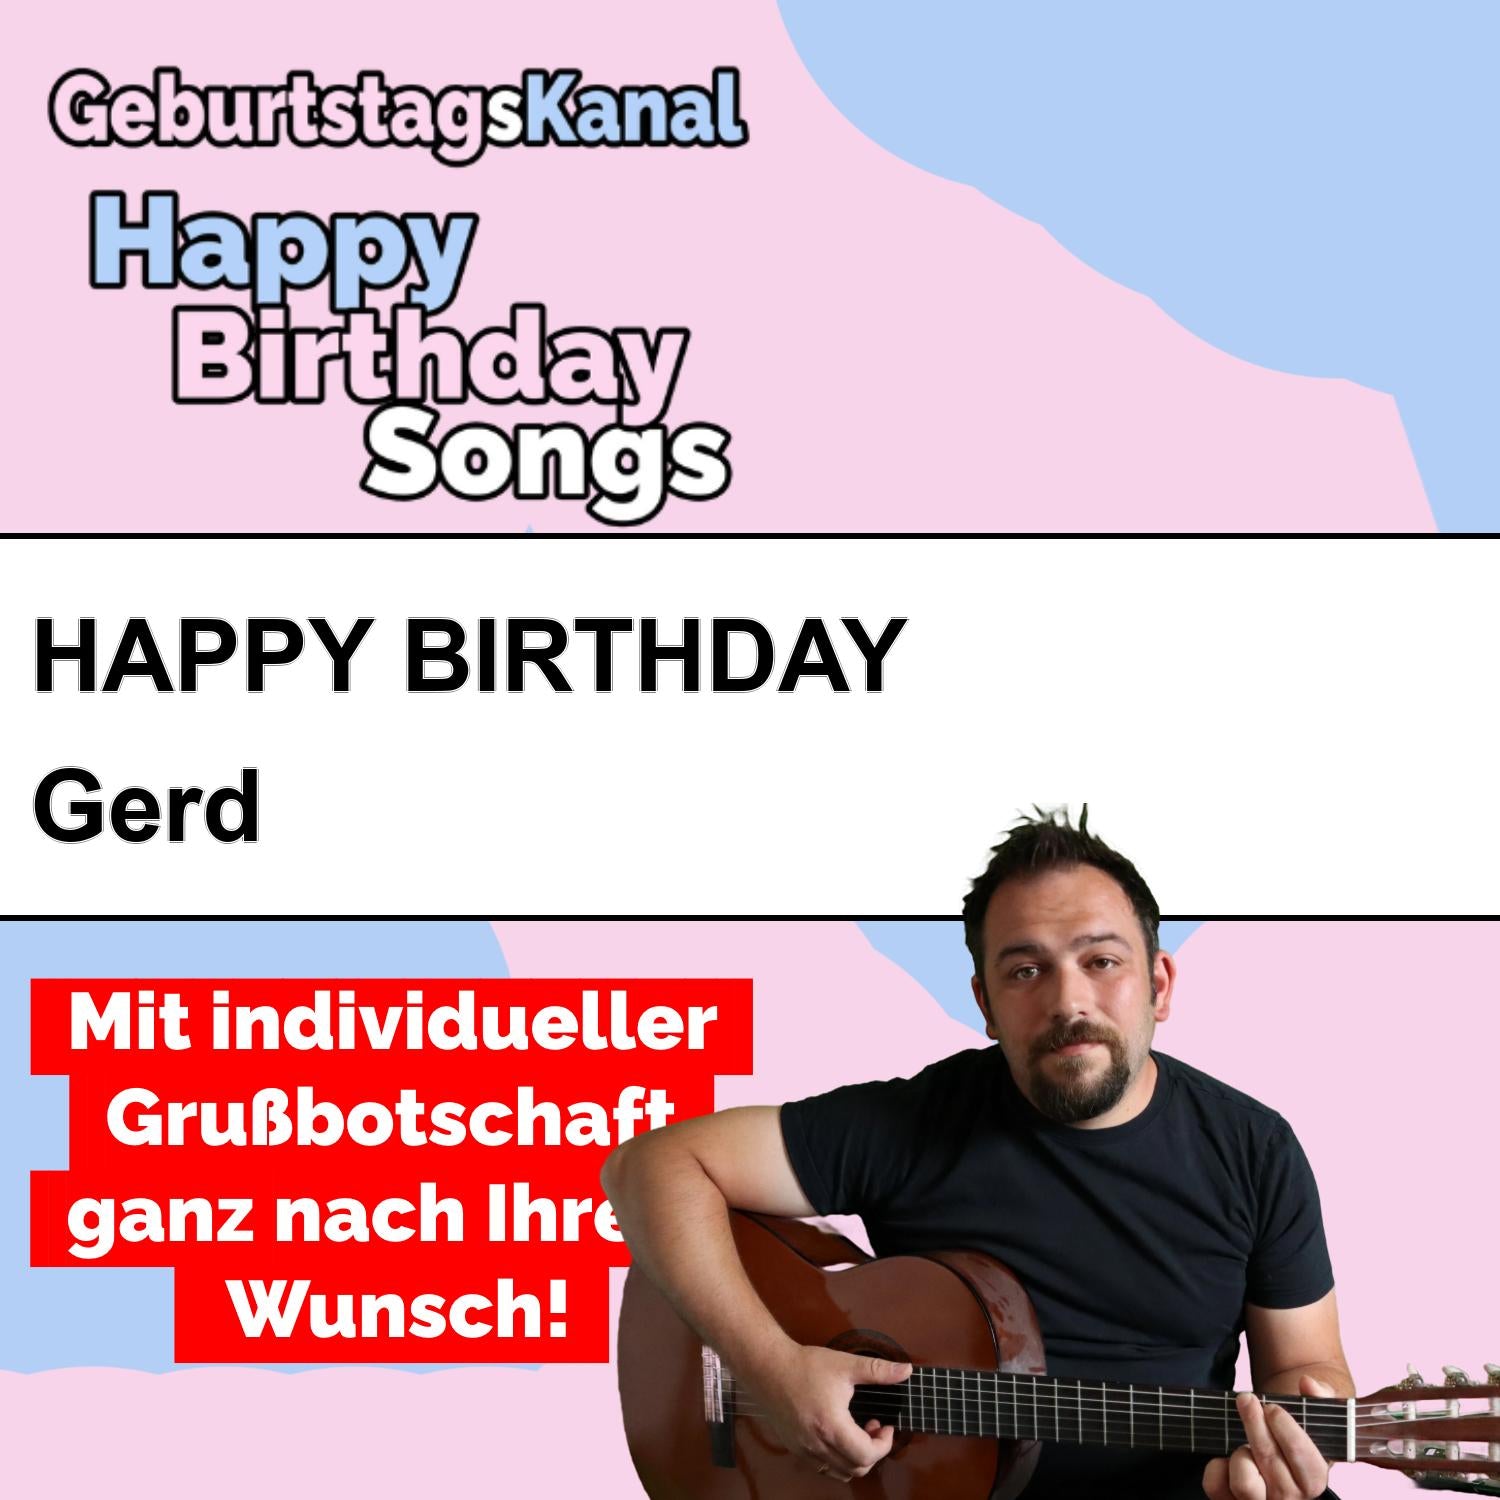 Produktbild Happy Birthday to you Gerd mit Wunschgrußbotschaft